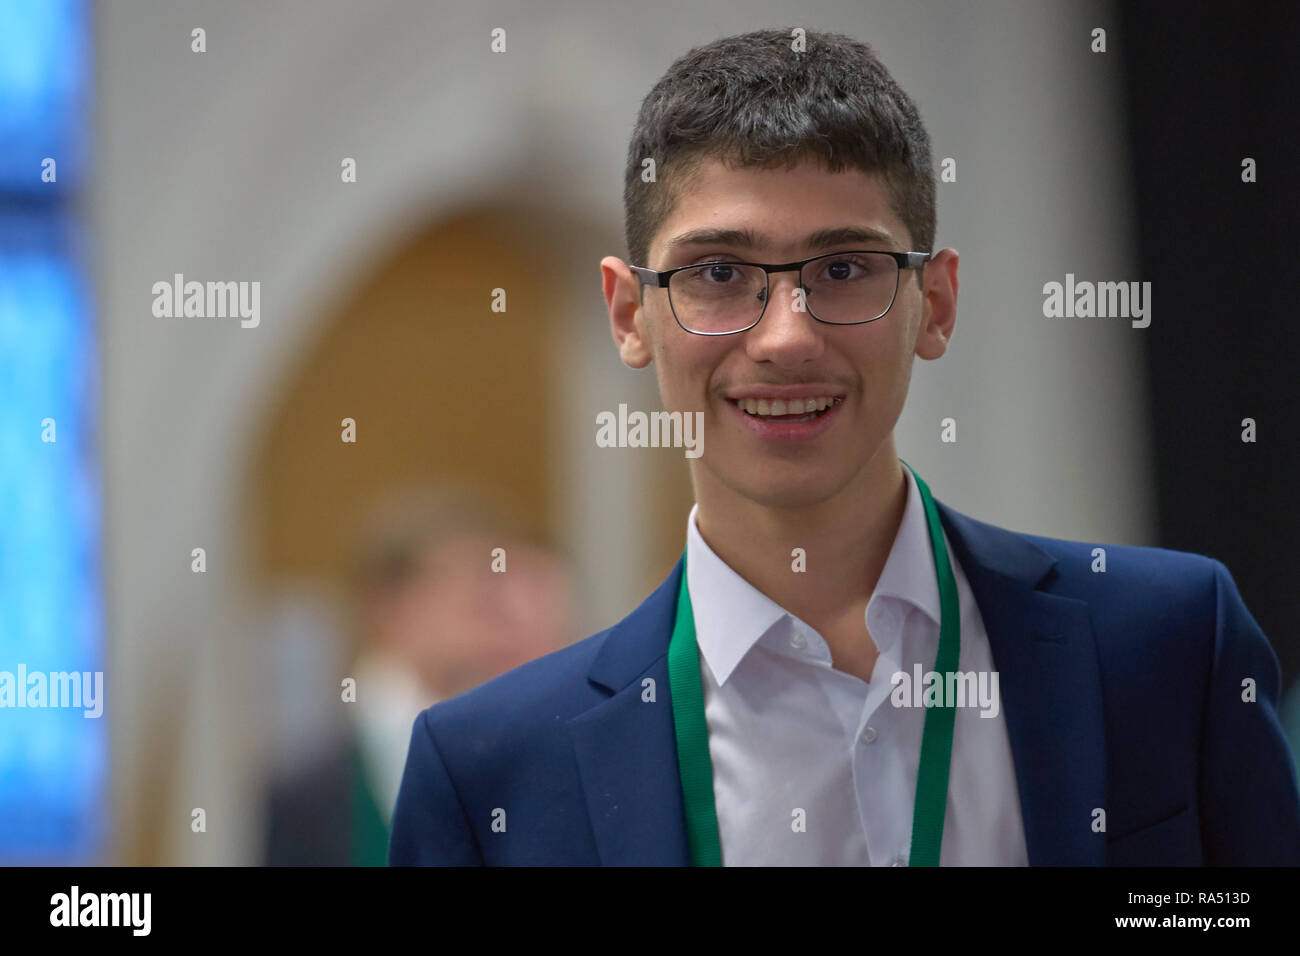 Saint-pétersbourg, Russie - 30 décembre 2018 : Le Grand Maître Alireza  Firouzja, l'Iran au cours de Salman King World Chess Championship 2018  Blitz. Finalement, il t Photo Stock - Alamy